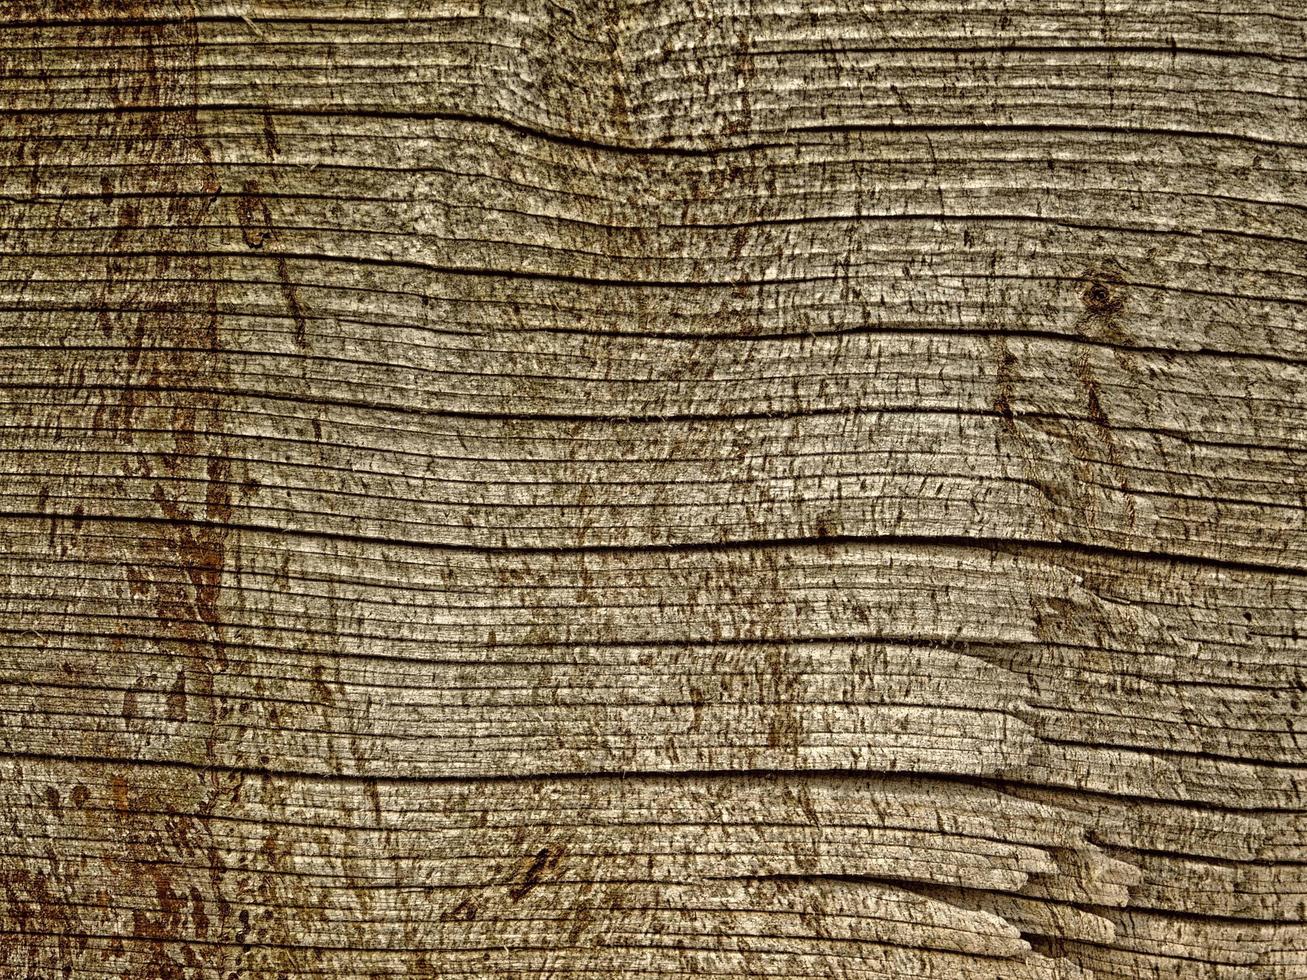 close-up van boomschors voor achtergrond of textuur foto